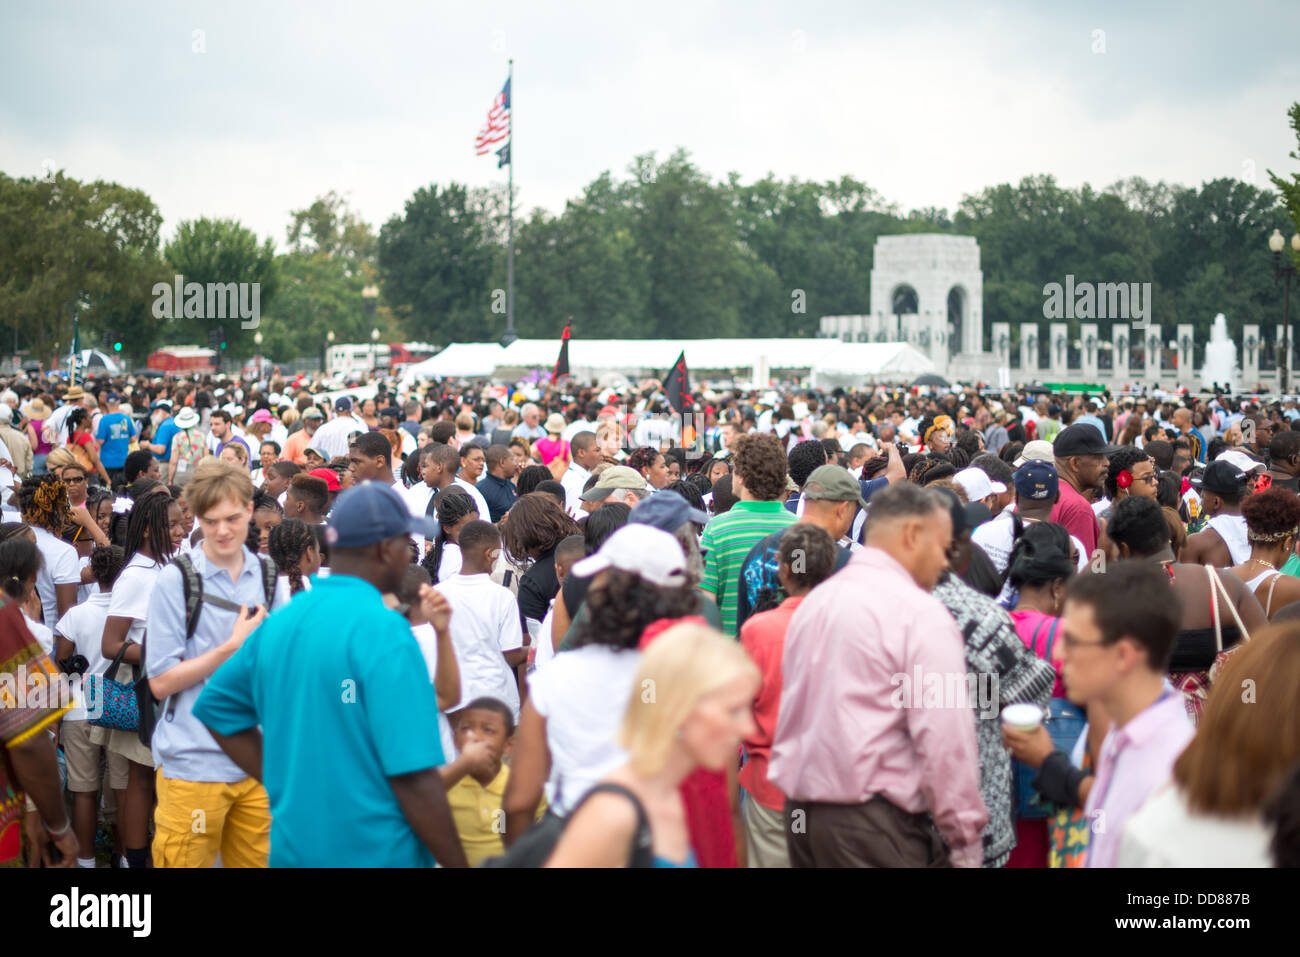 WASHINGTON, DC, États-Unis (oct. 28, 2013) - grandes foules rassemblées malgré la météo contrastée sur le National Mall à Washington DC lors de la commémoration du 50e anniversaire de la célèbre Marche sur Washington de 1963 mémoires pour droit civil, Martin Luther King Jr's 'J'ai fait un rêve" discours. Banque D'Images